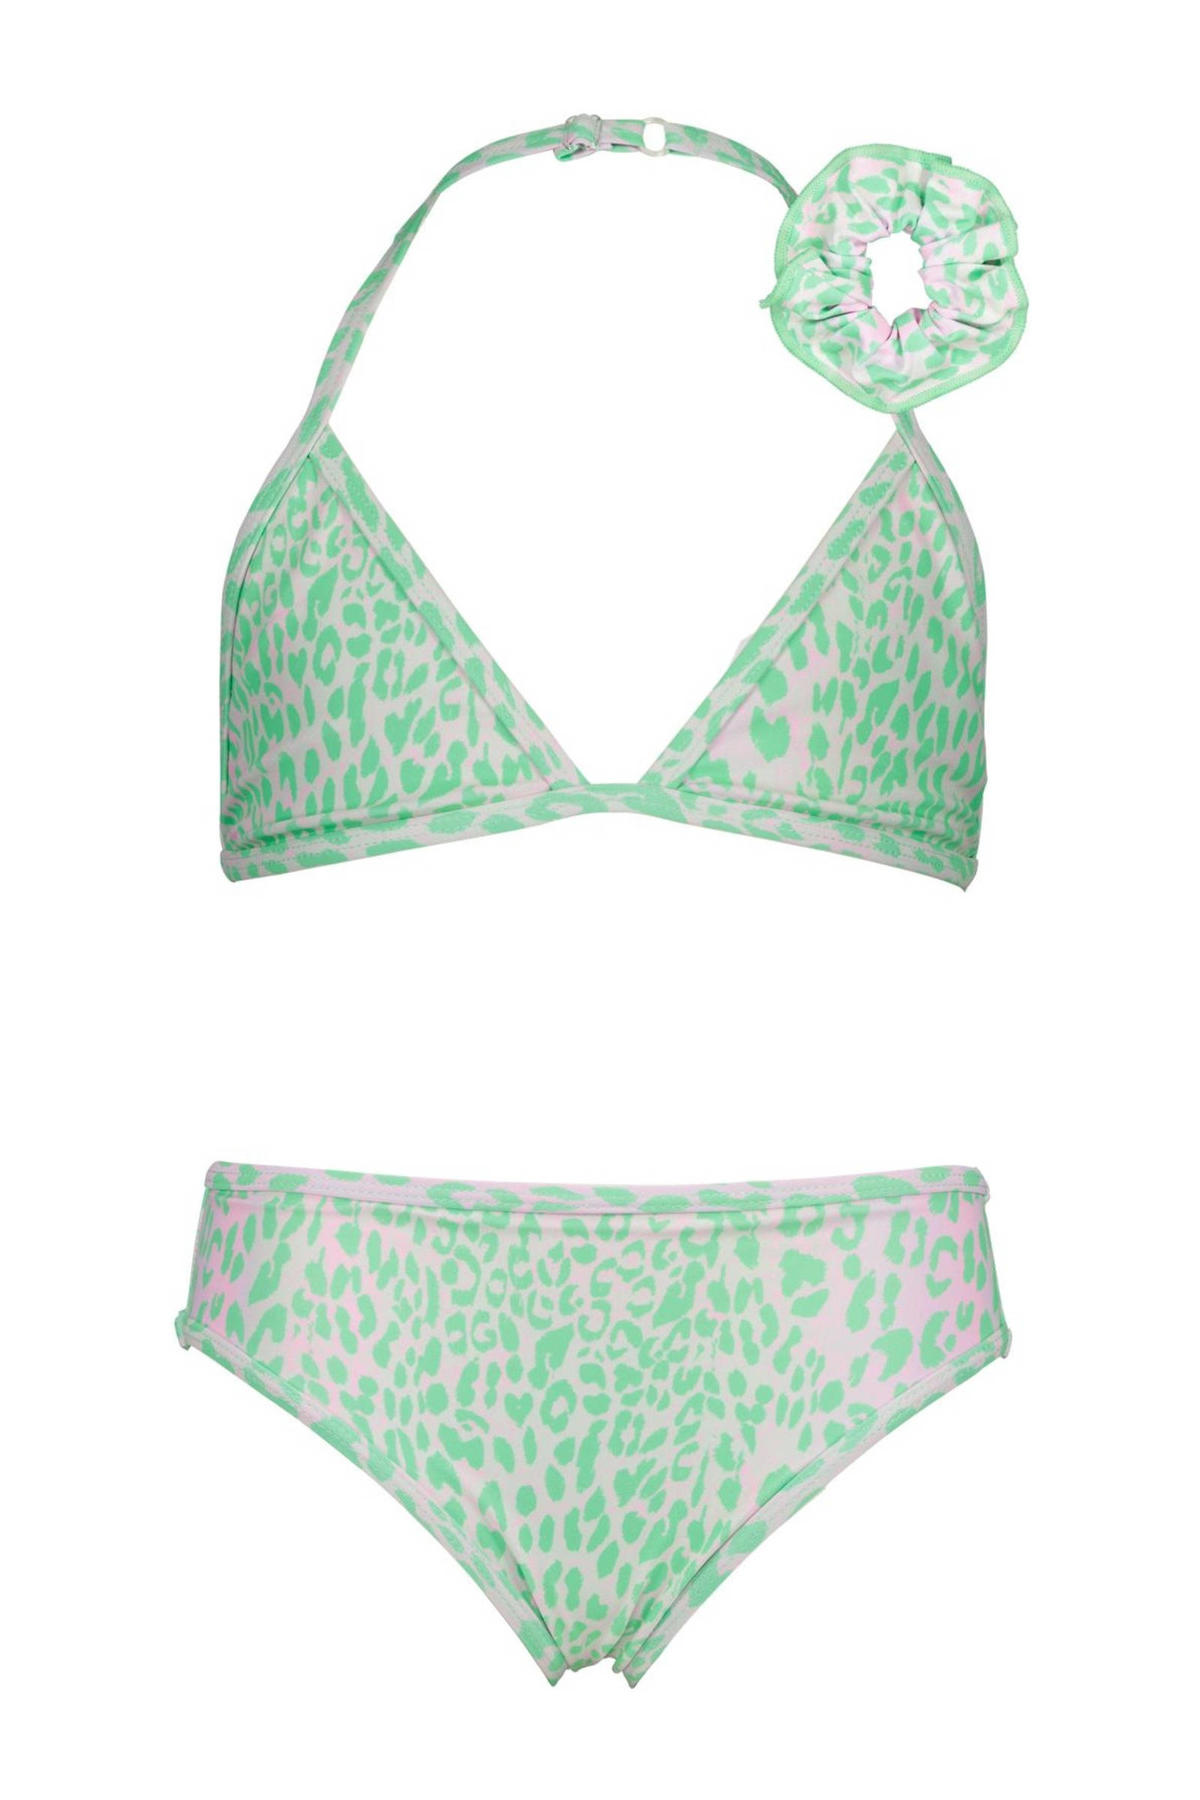 scherp Voorschrijven Transformator Vingino triangel bikini Zamira met scrunchie groen/wit | kleertjes.com